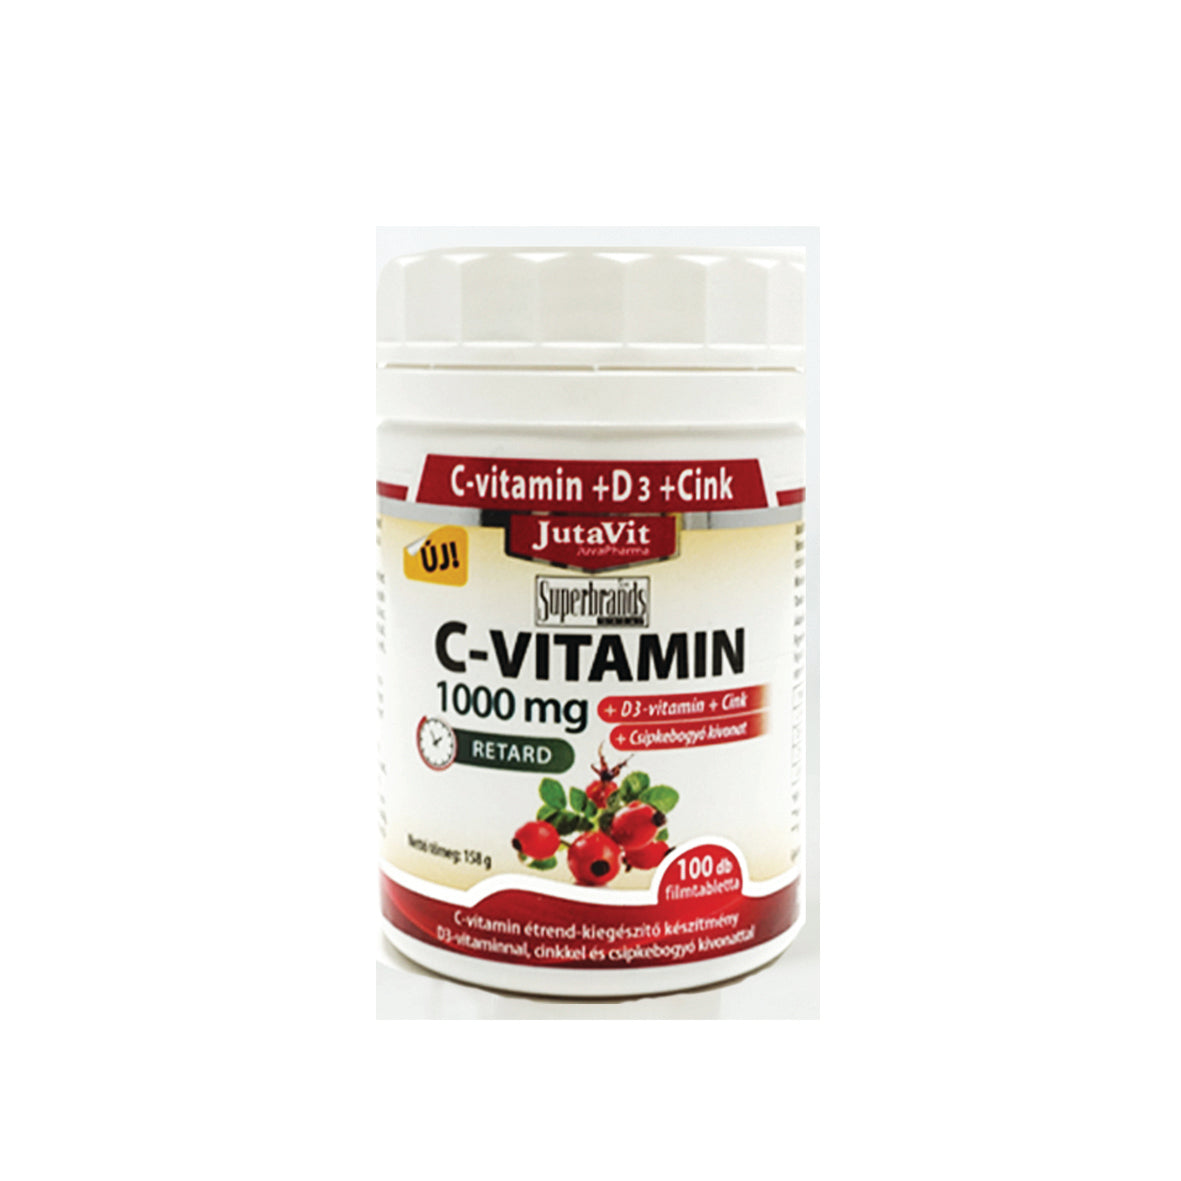 Jutavit C-vitamin 1000mg +D3+Cink 100db